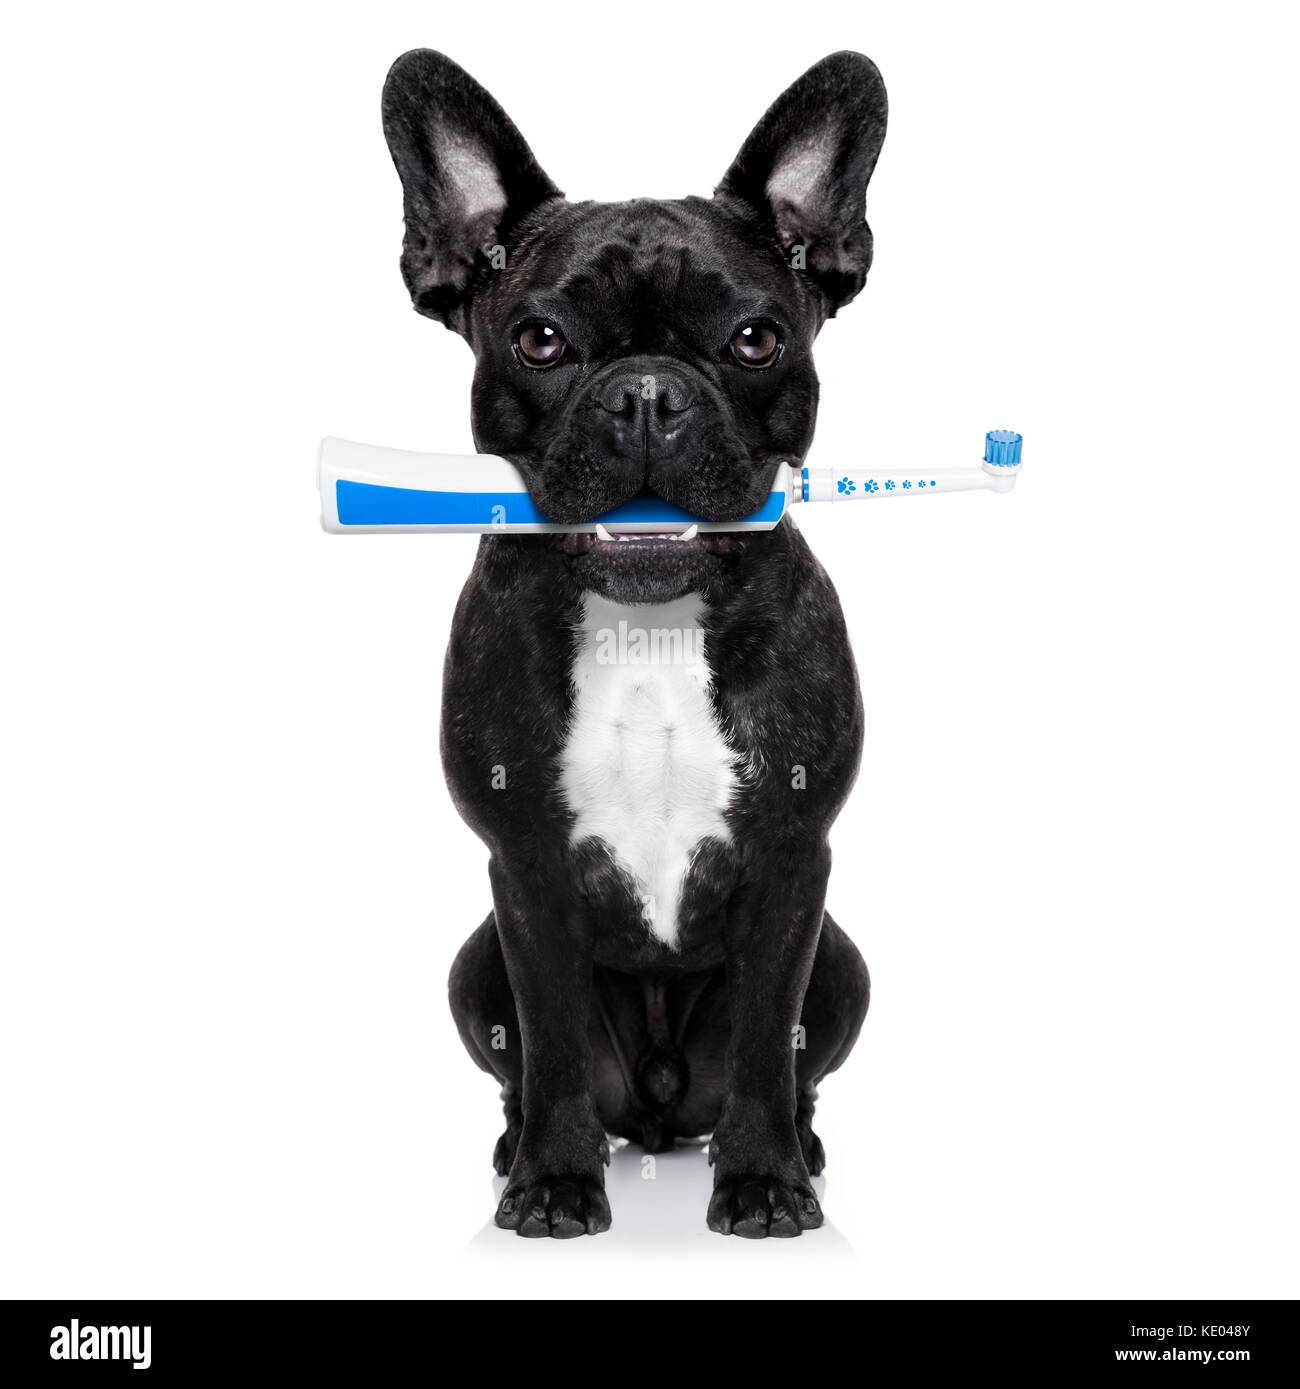 Französische Bulldogge hund Holding elektrische Zahnbürste mit Mund, auf  weißem Hintergrund Stockfotografie - Alamy